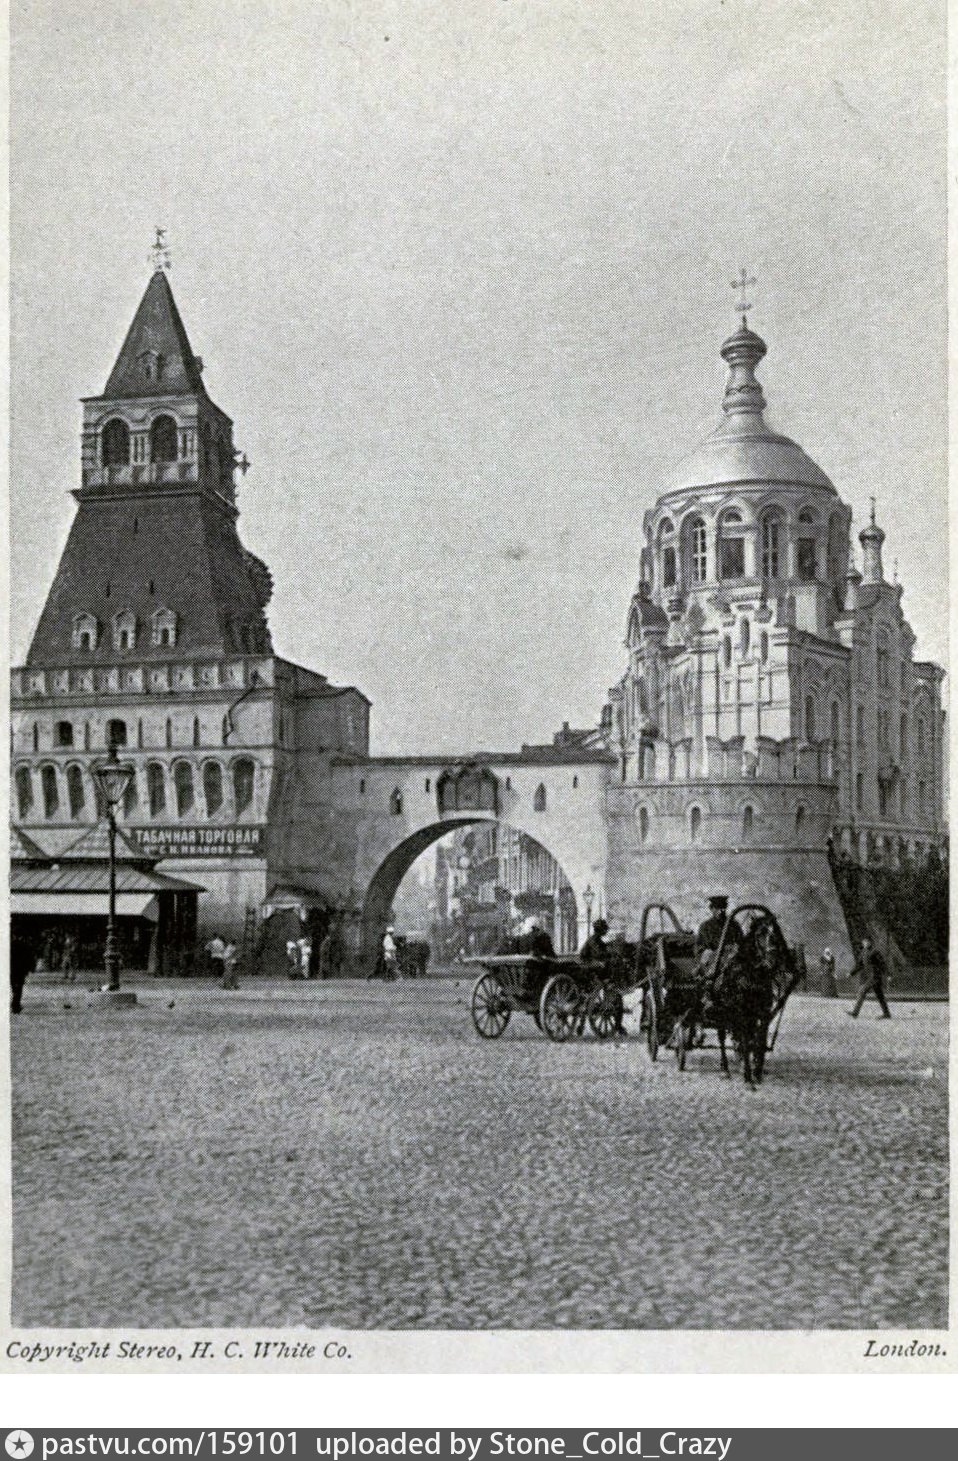 владимирские ворота китай города на лубянской площади